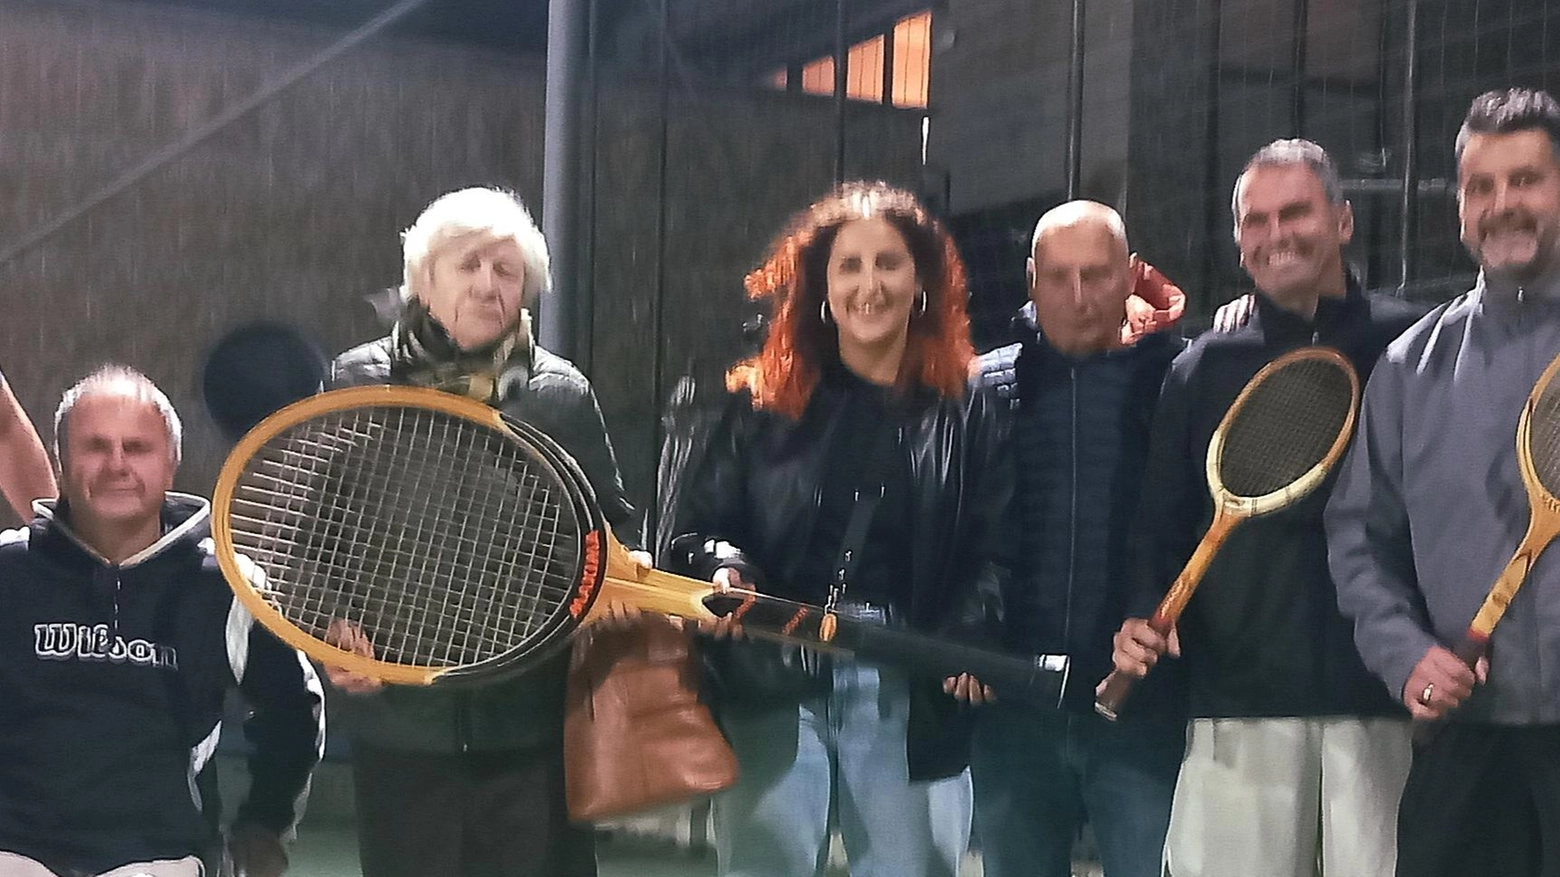 Premiati i tennisti del Torneo dell'Amicizia "Ghiga per la ricerca" a Porto Ercole. L'evento ha ricordato due tennisti scomparsi, consegnando premi ai vincitori. L'associazione devolve le quote di partecipazione all'Airc.